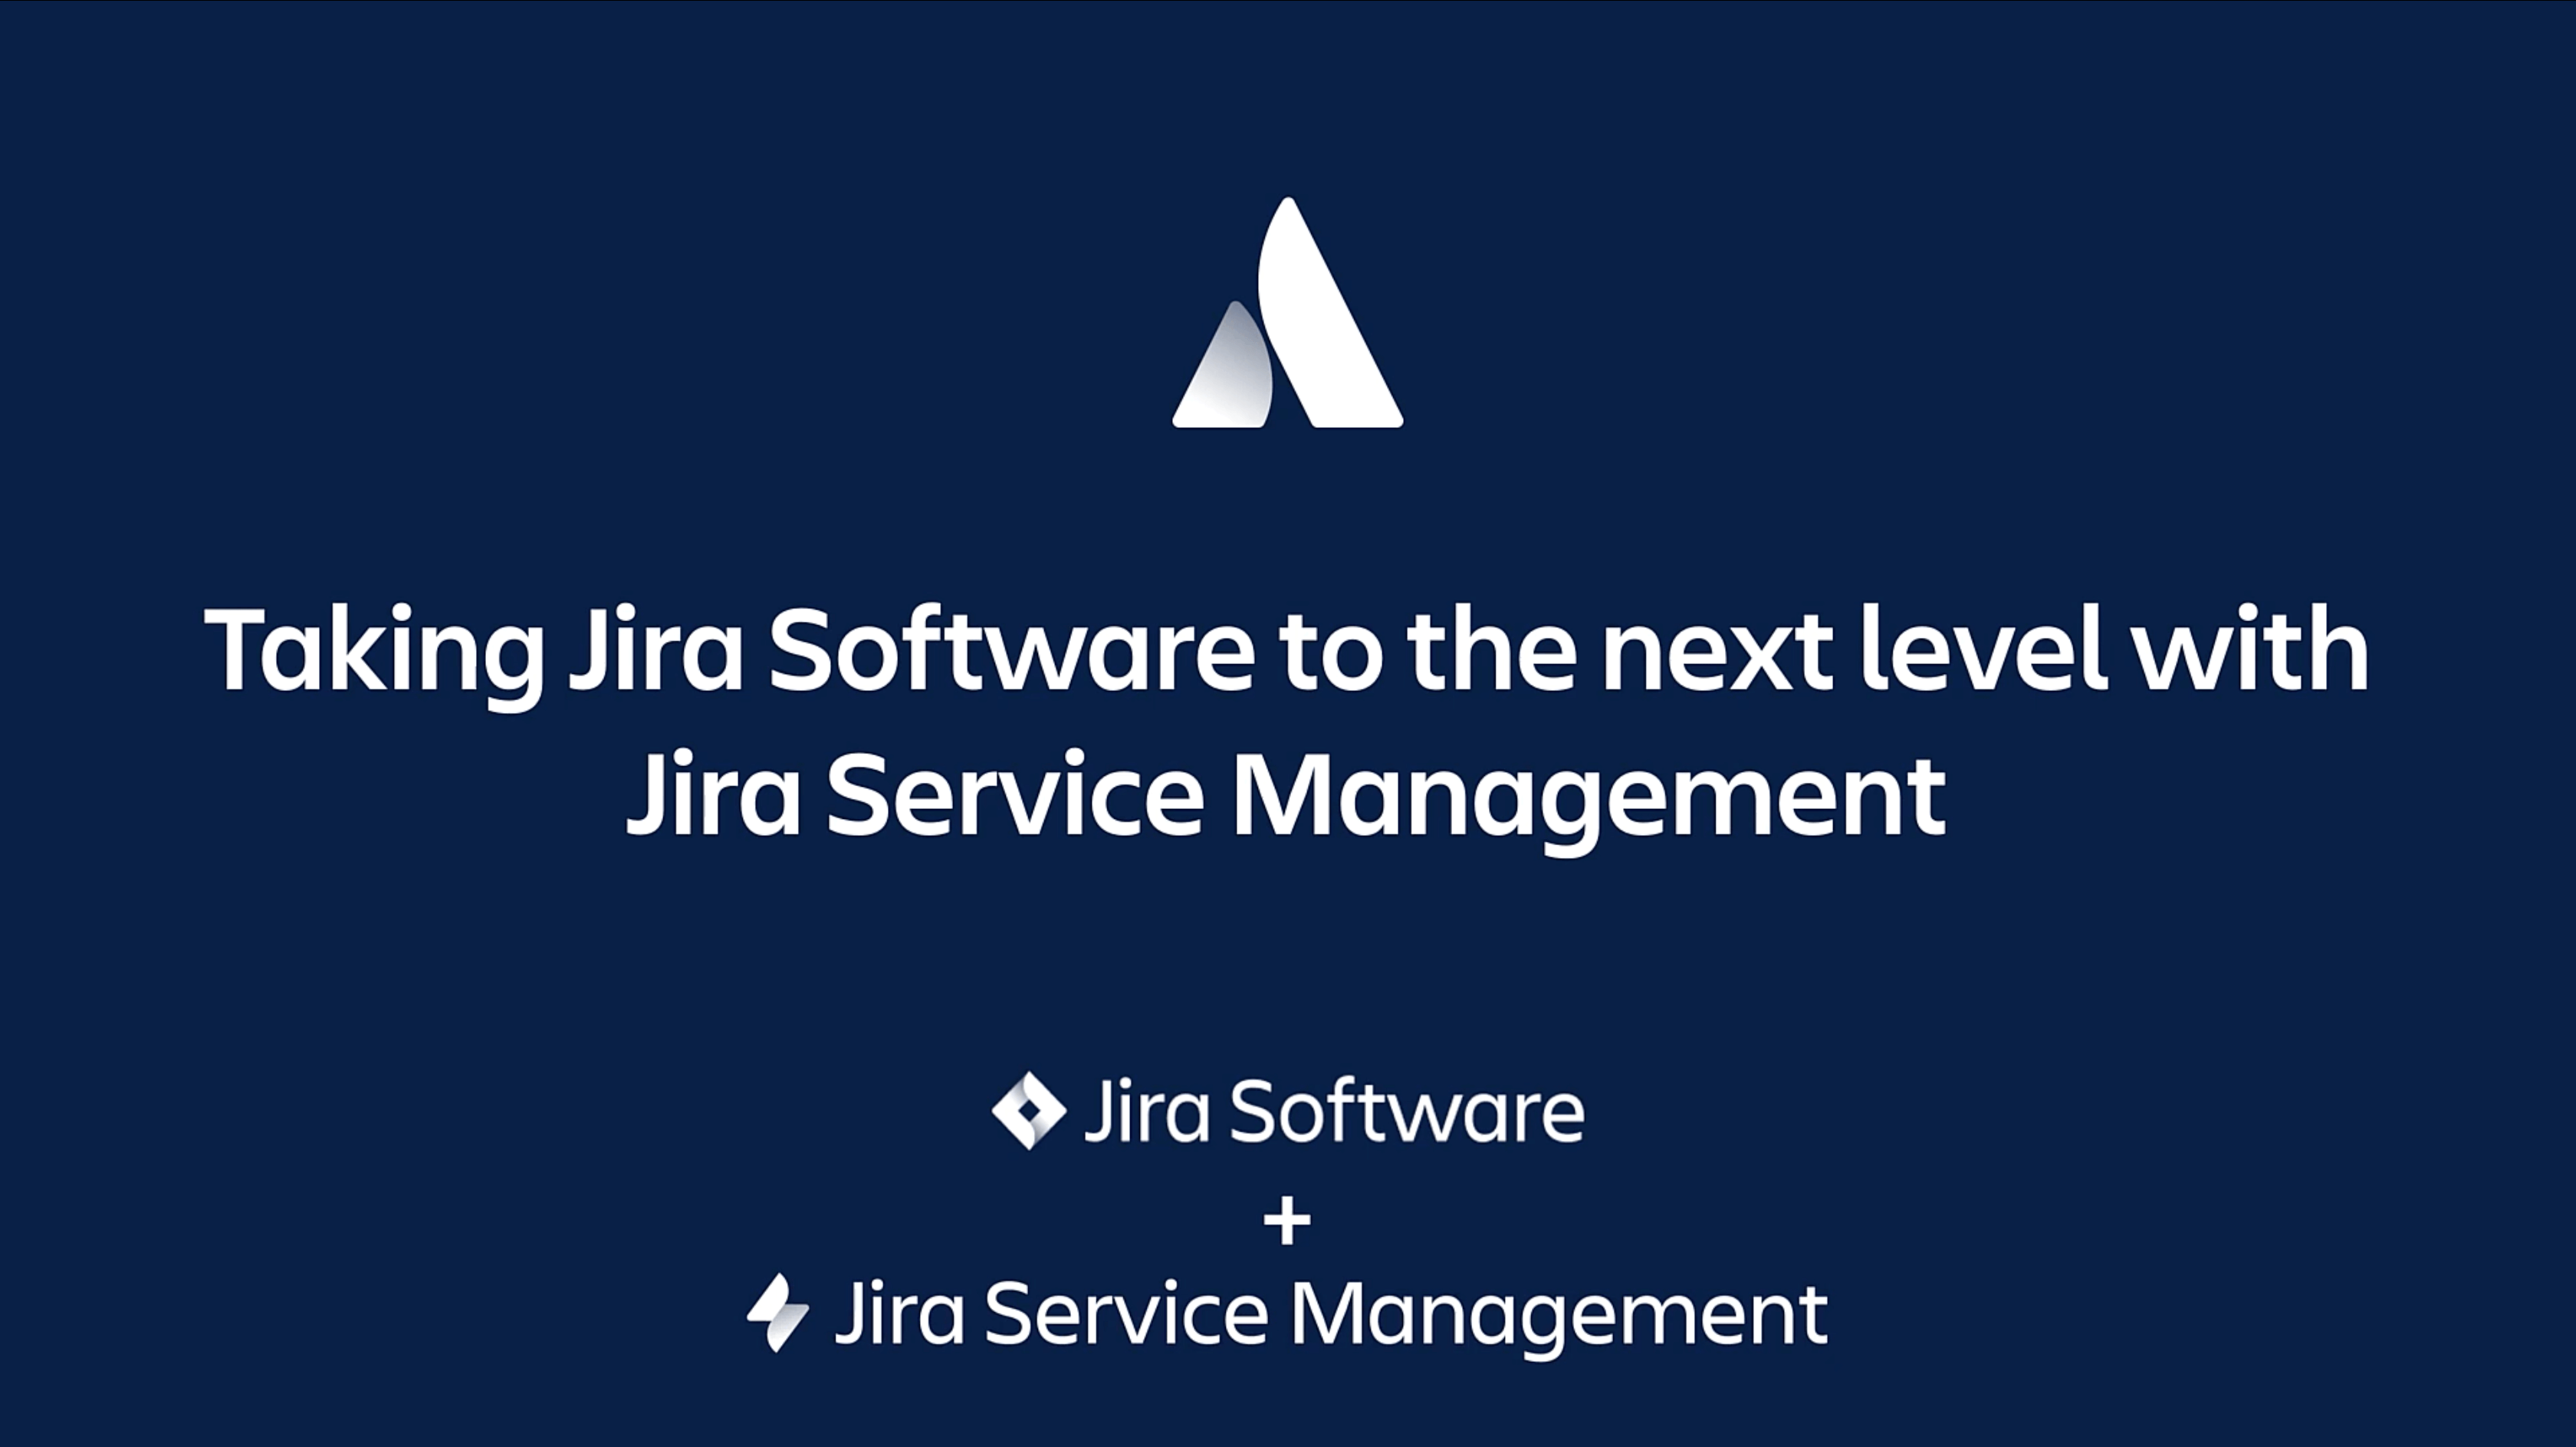 Como avançar o Jira Software com o Jira Service Management